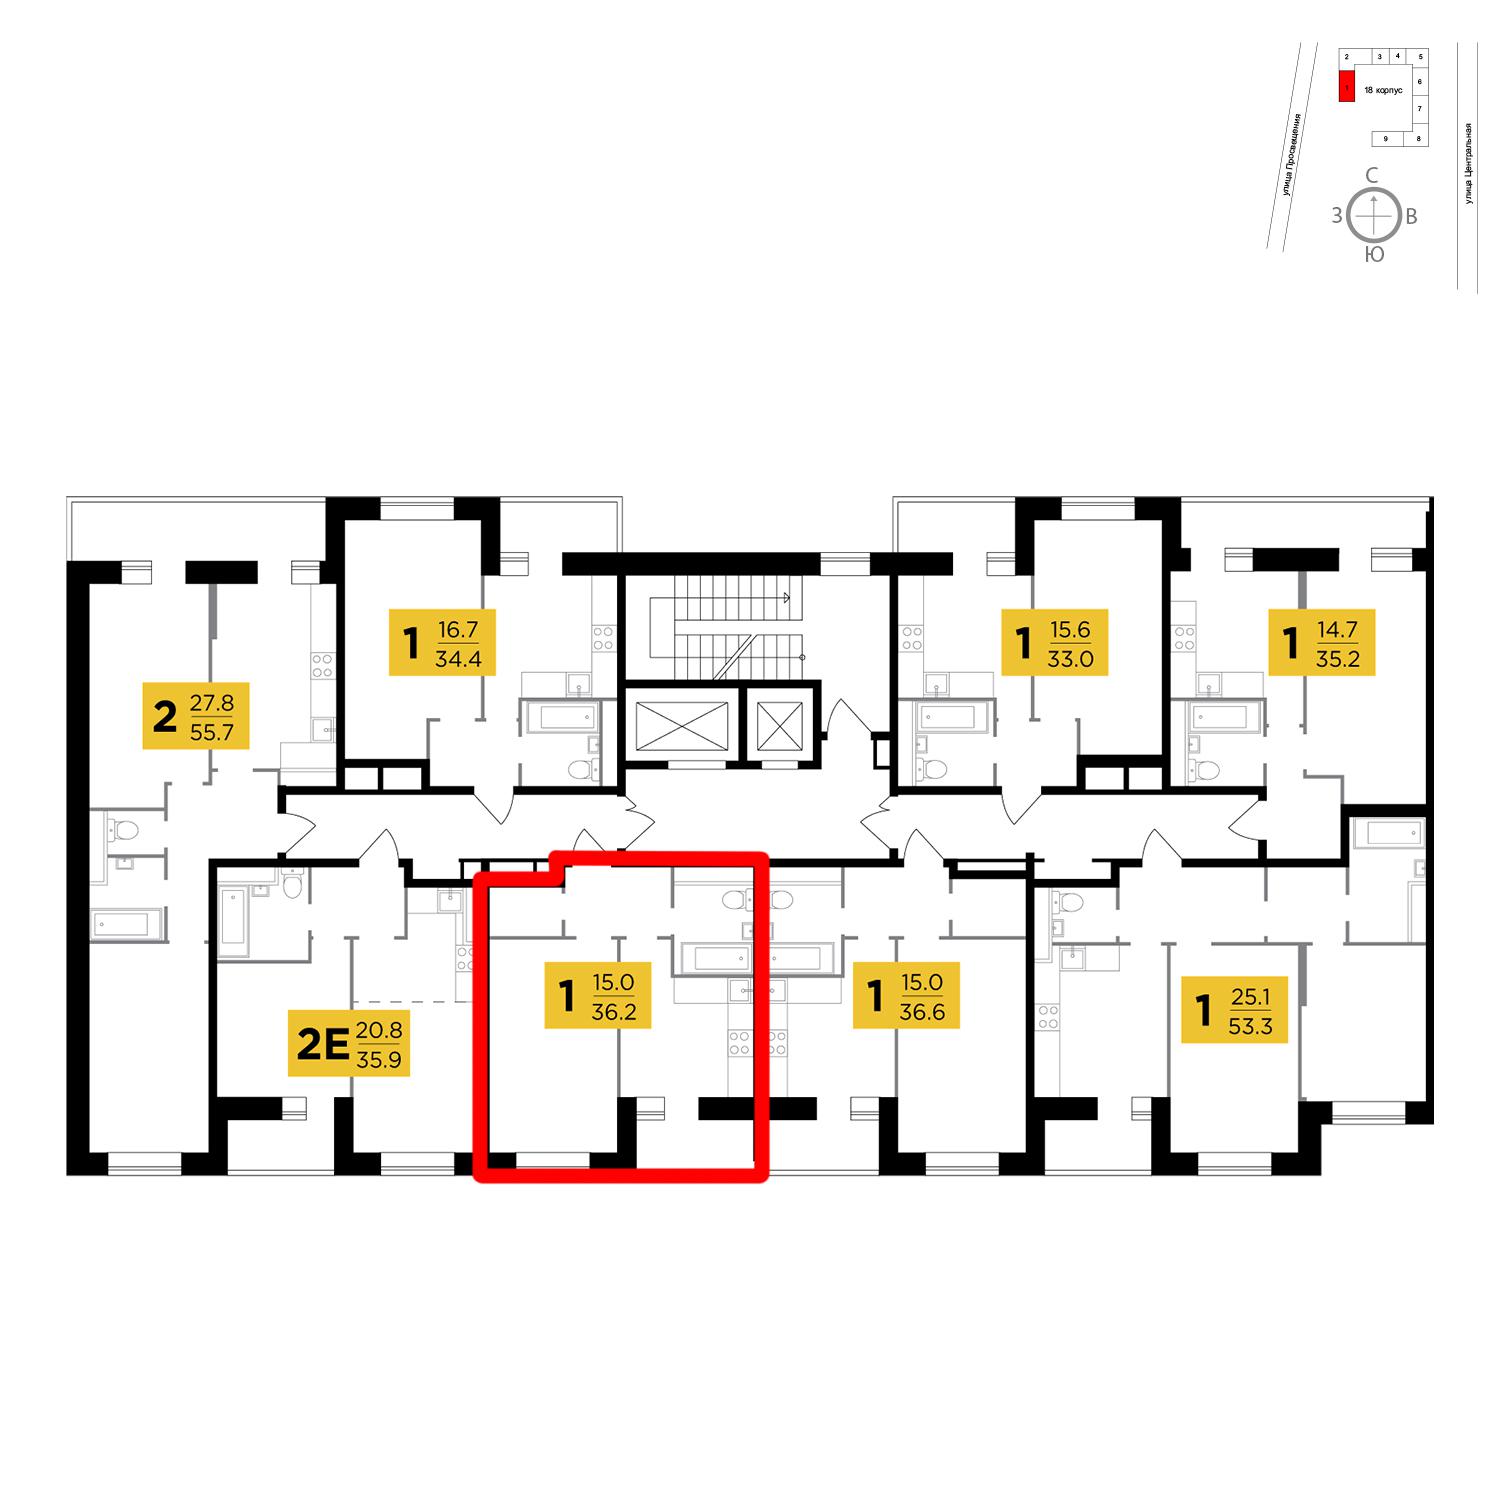 Продаётся 1-комнатная квартира в новостройке 36.2 кв.м. этаж 14/16 за 2 688 899 руб 